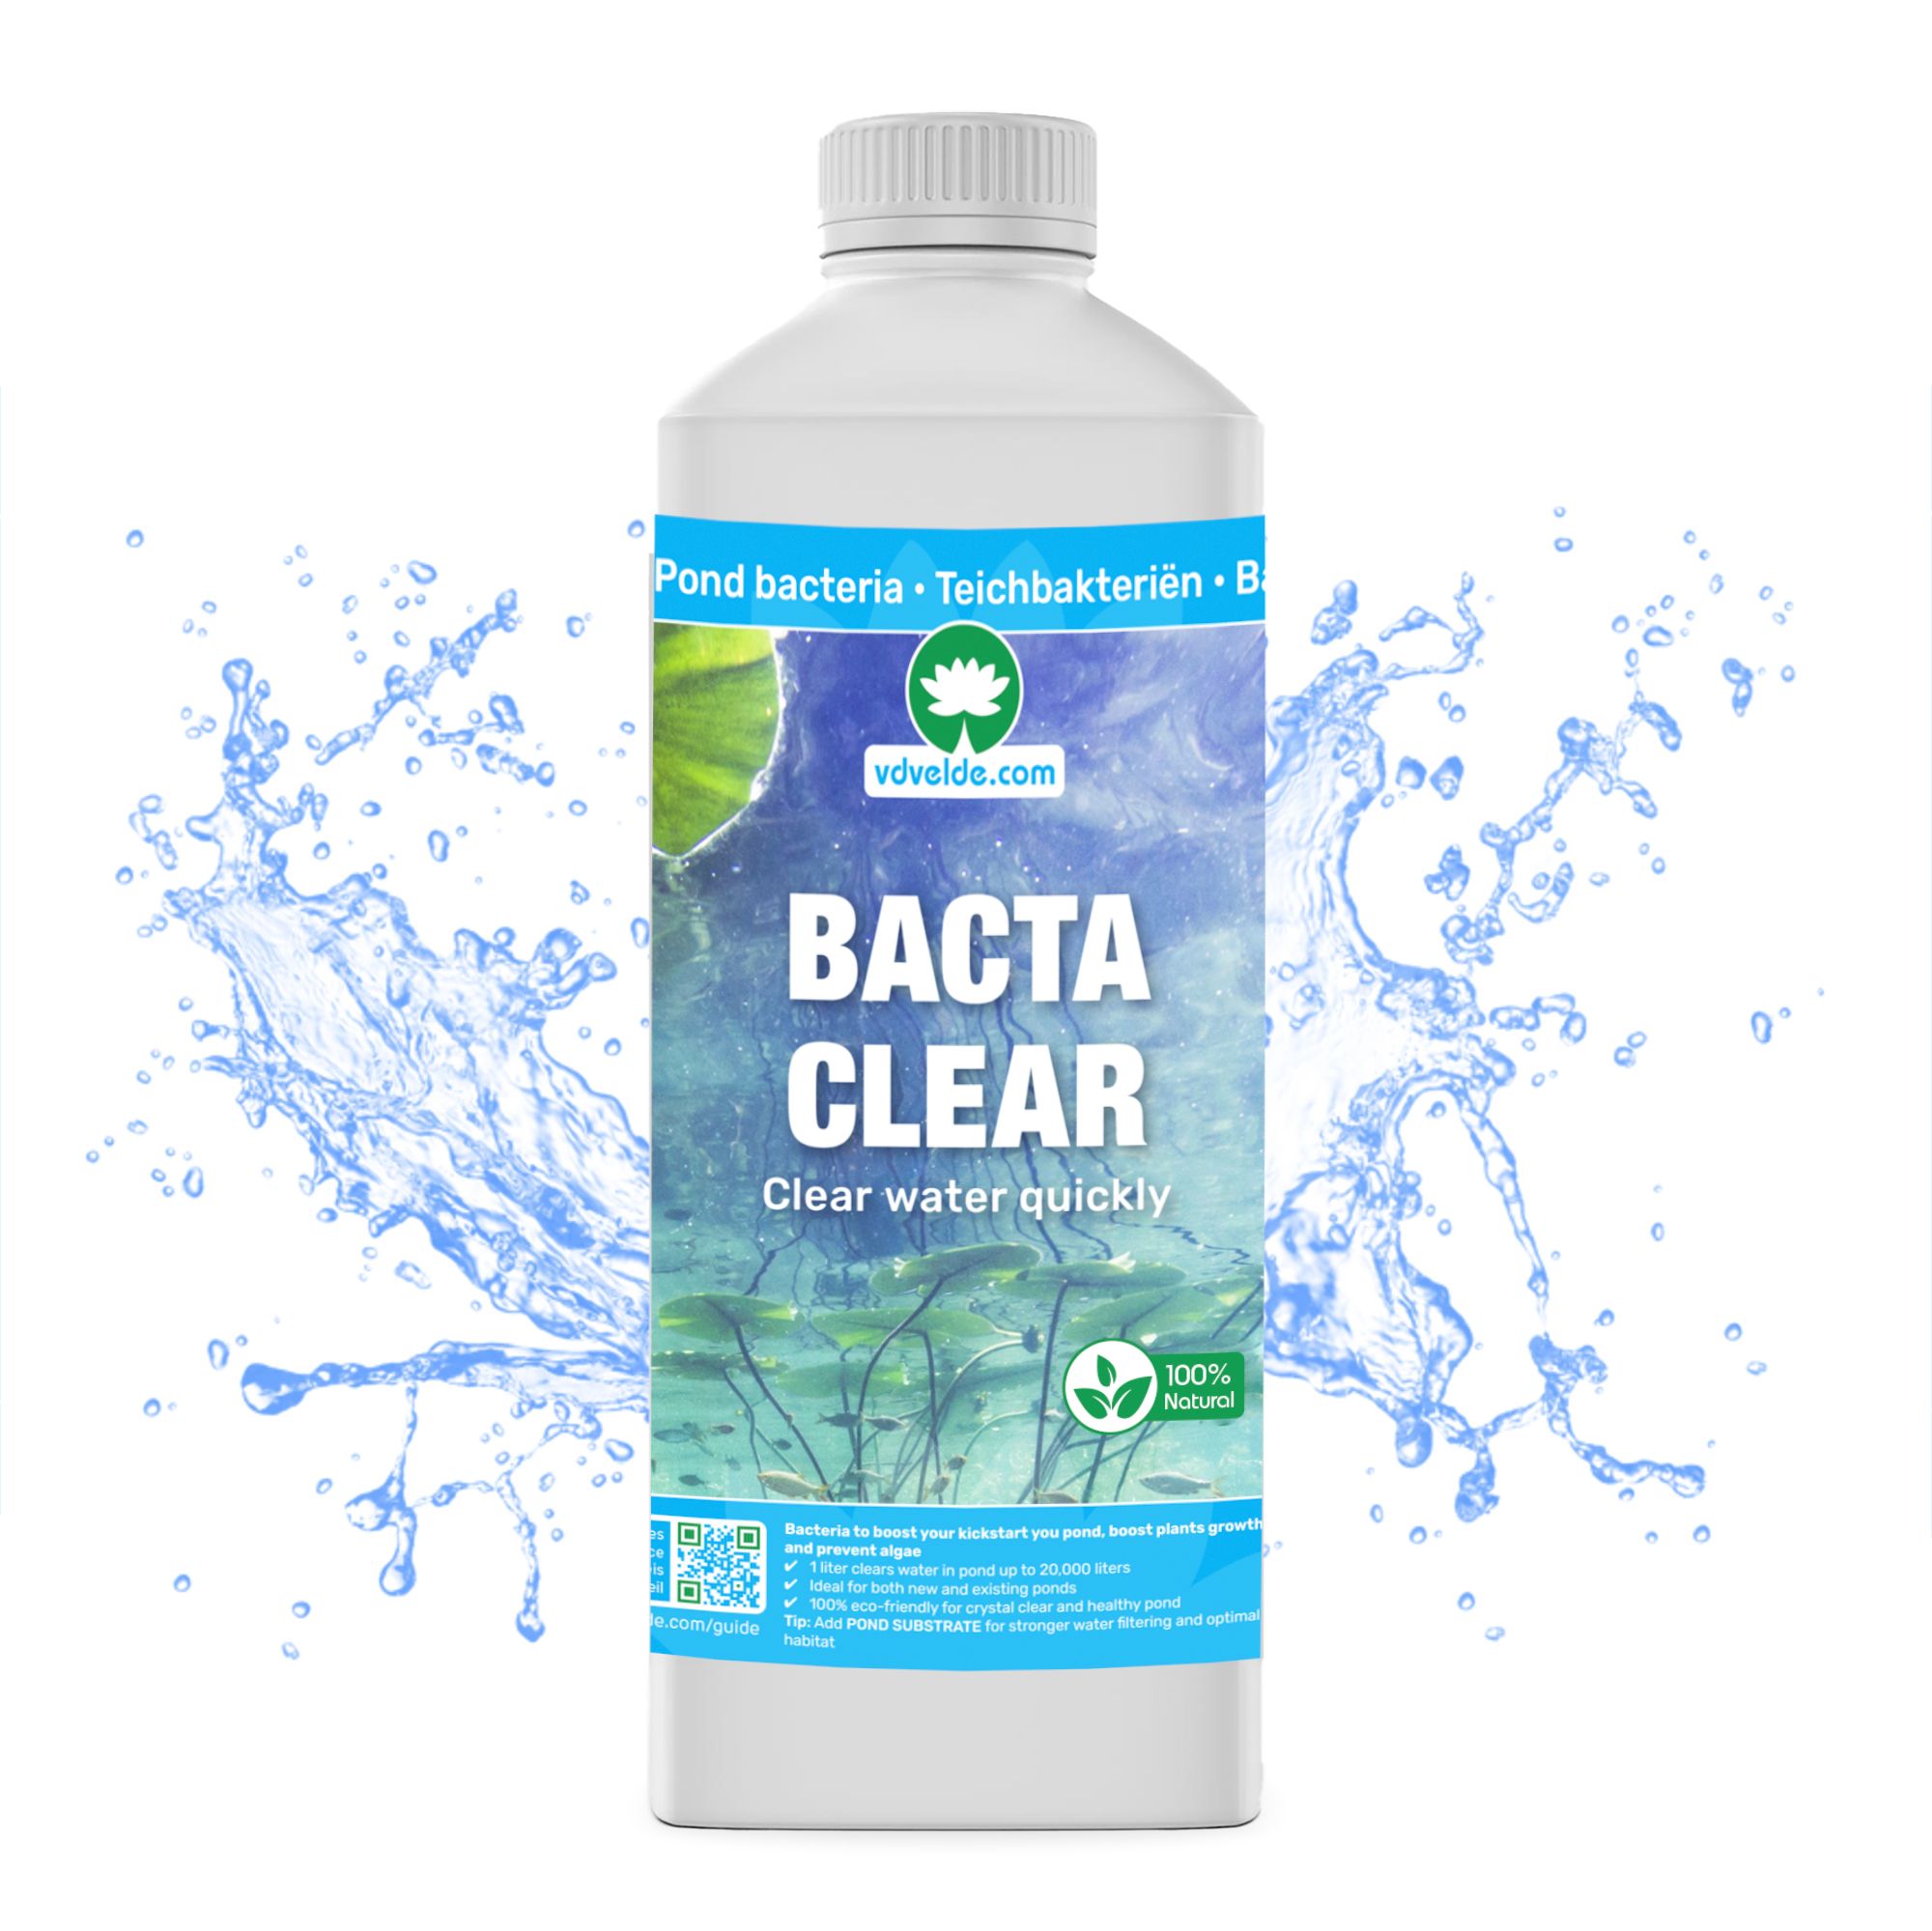 vdvelde.com - Bacta Clear Vijverbacteriën - 1 Liter Algenbestrijding Vijver - Bacterien Vijver en Algen Verwijderaar - 100% Biologisch Draadalgen Bestrijdingsmiddel - Van der Velde Waterplanten